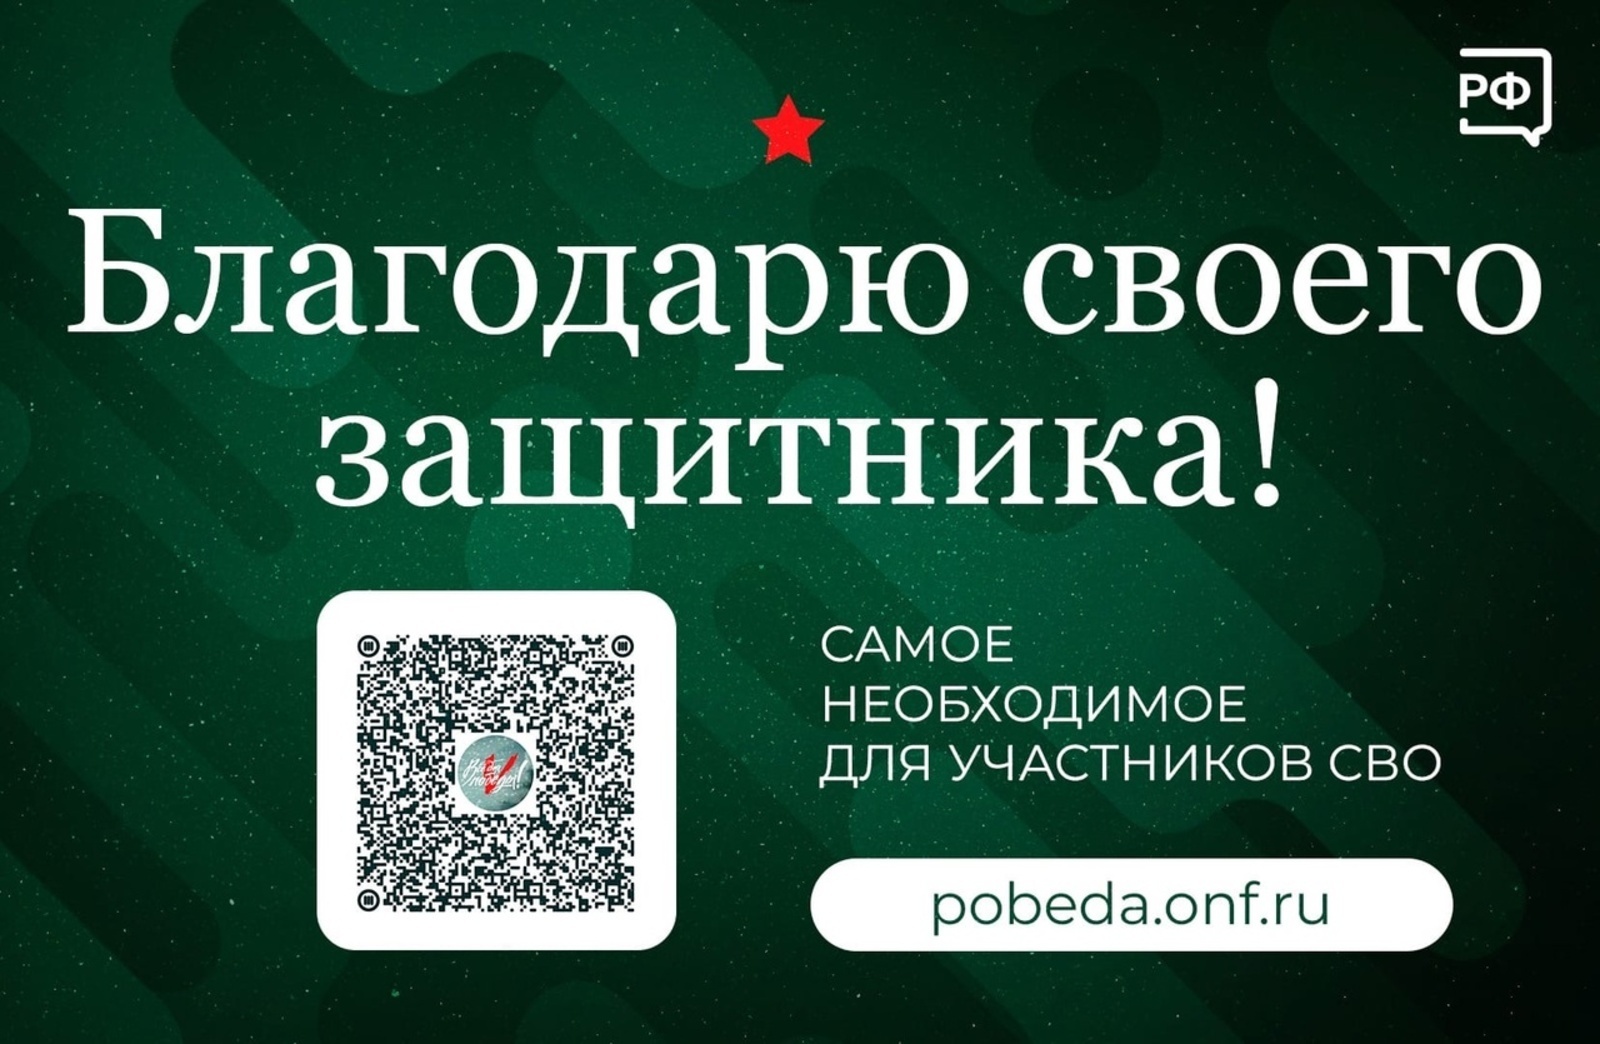 Как можно поддержать участников СВО https://pobeda.onf.ru